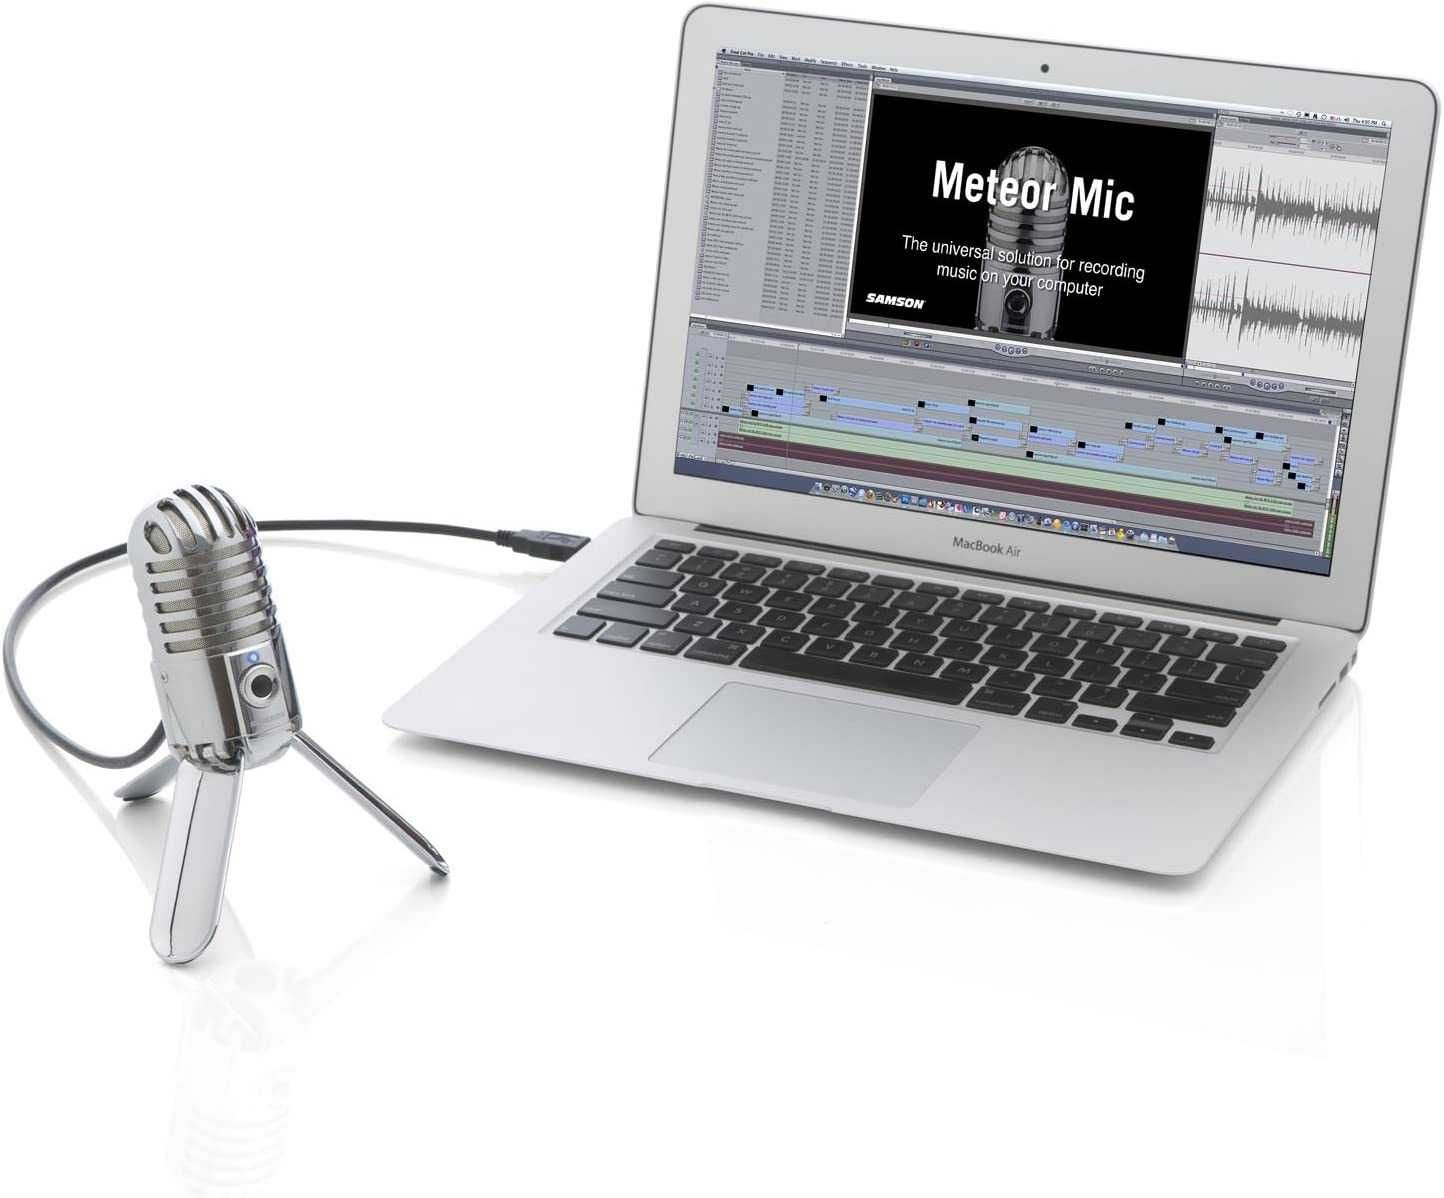 Новый! Микрофон конденсаторный Samson Meteor USB